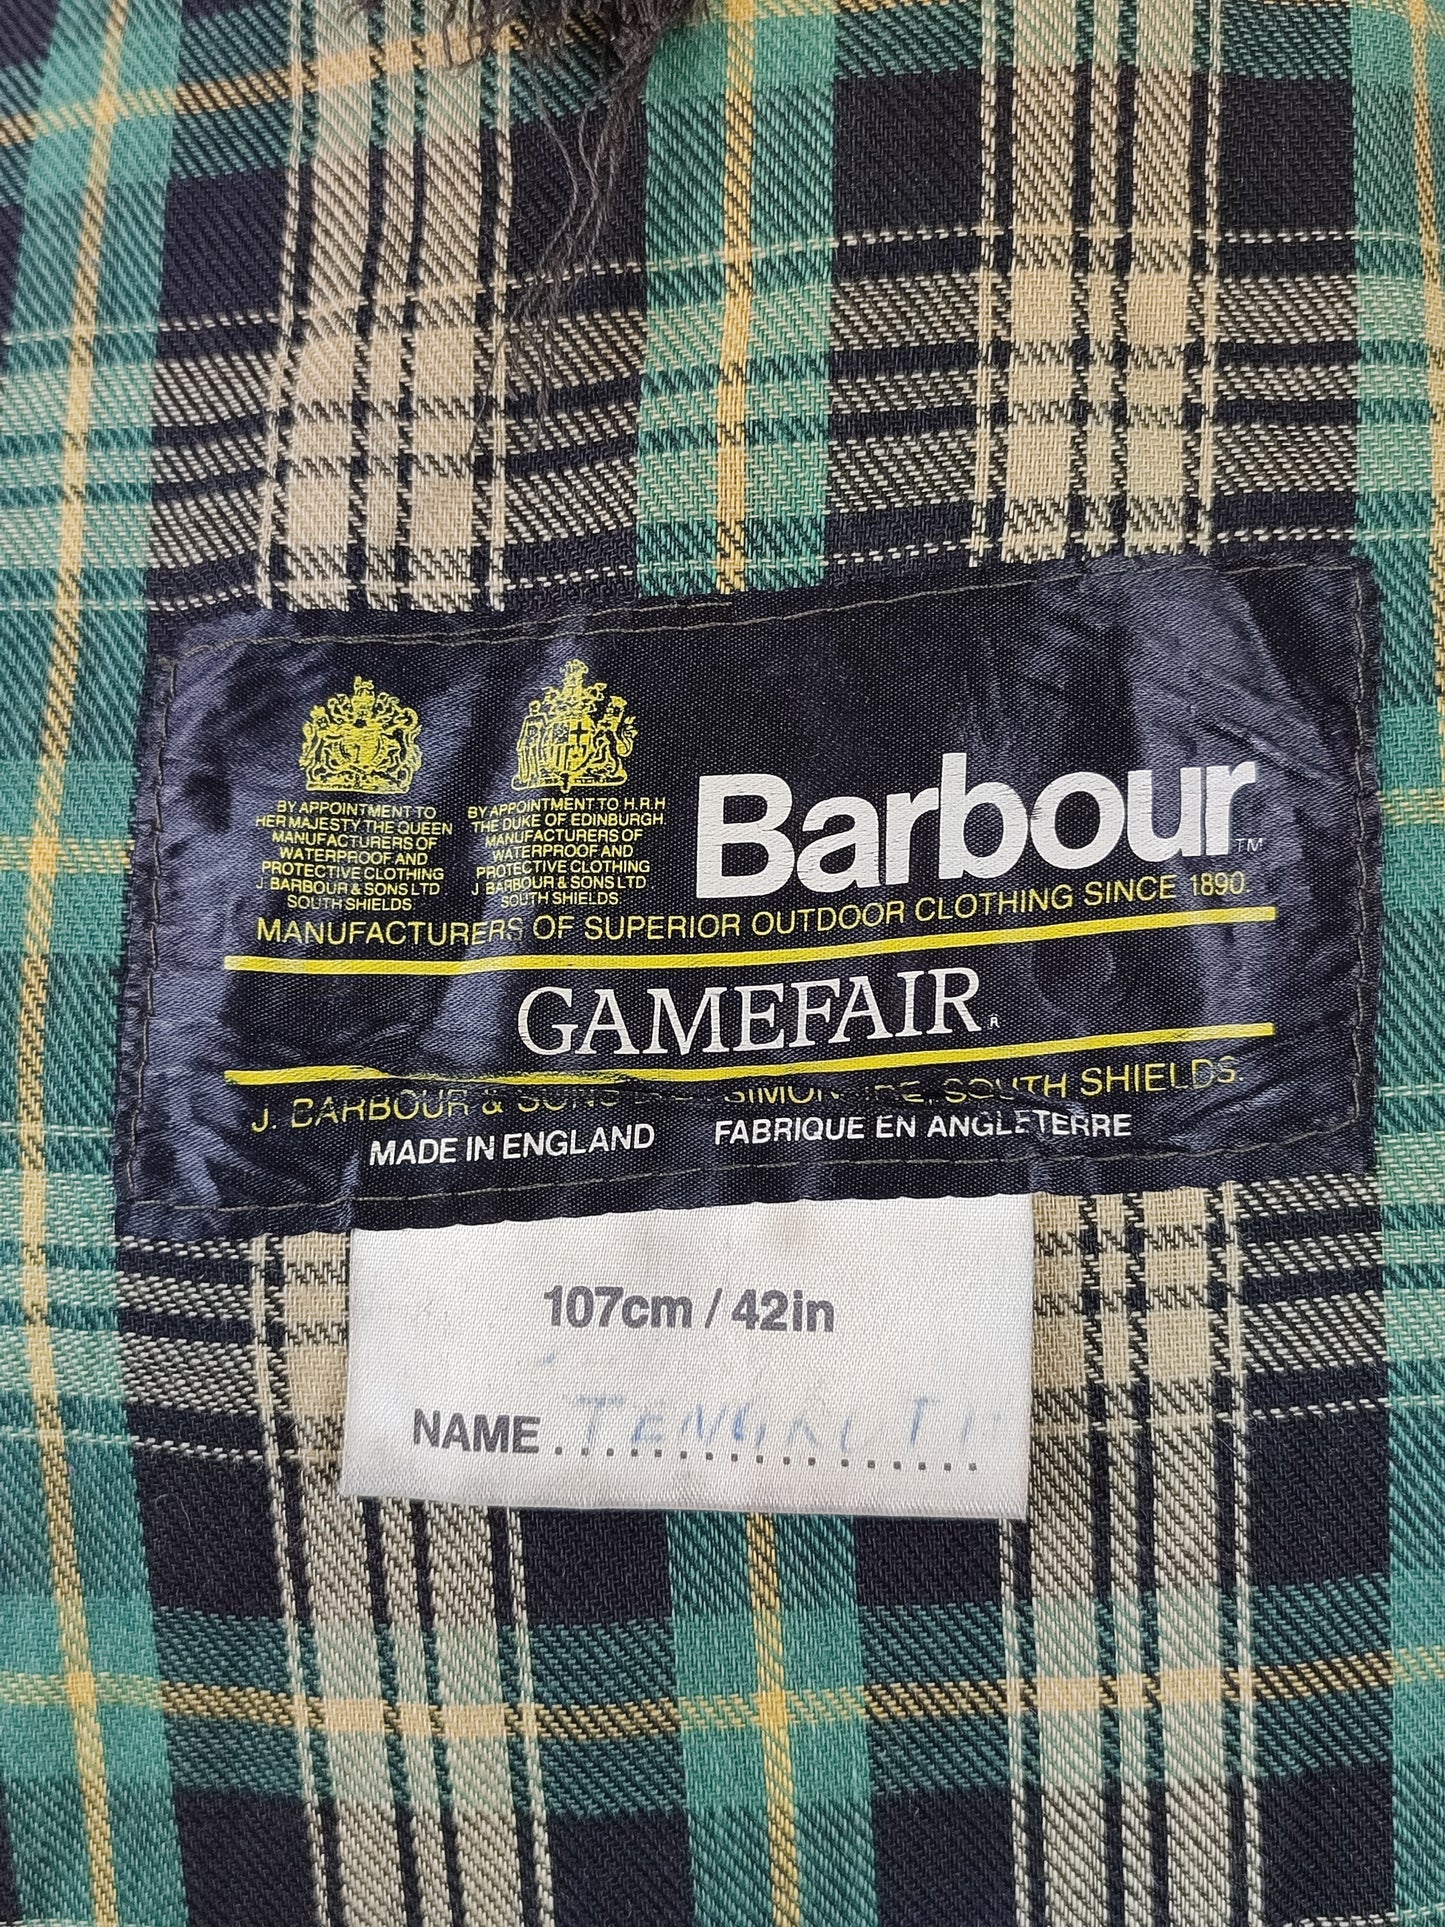 Barbour Gamefair Verde C42/107 cm Green Wax Vintage Gamefair Jacket c42 Large